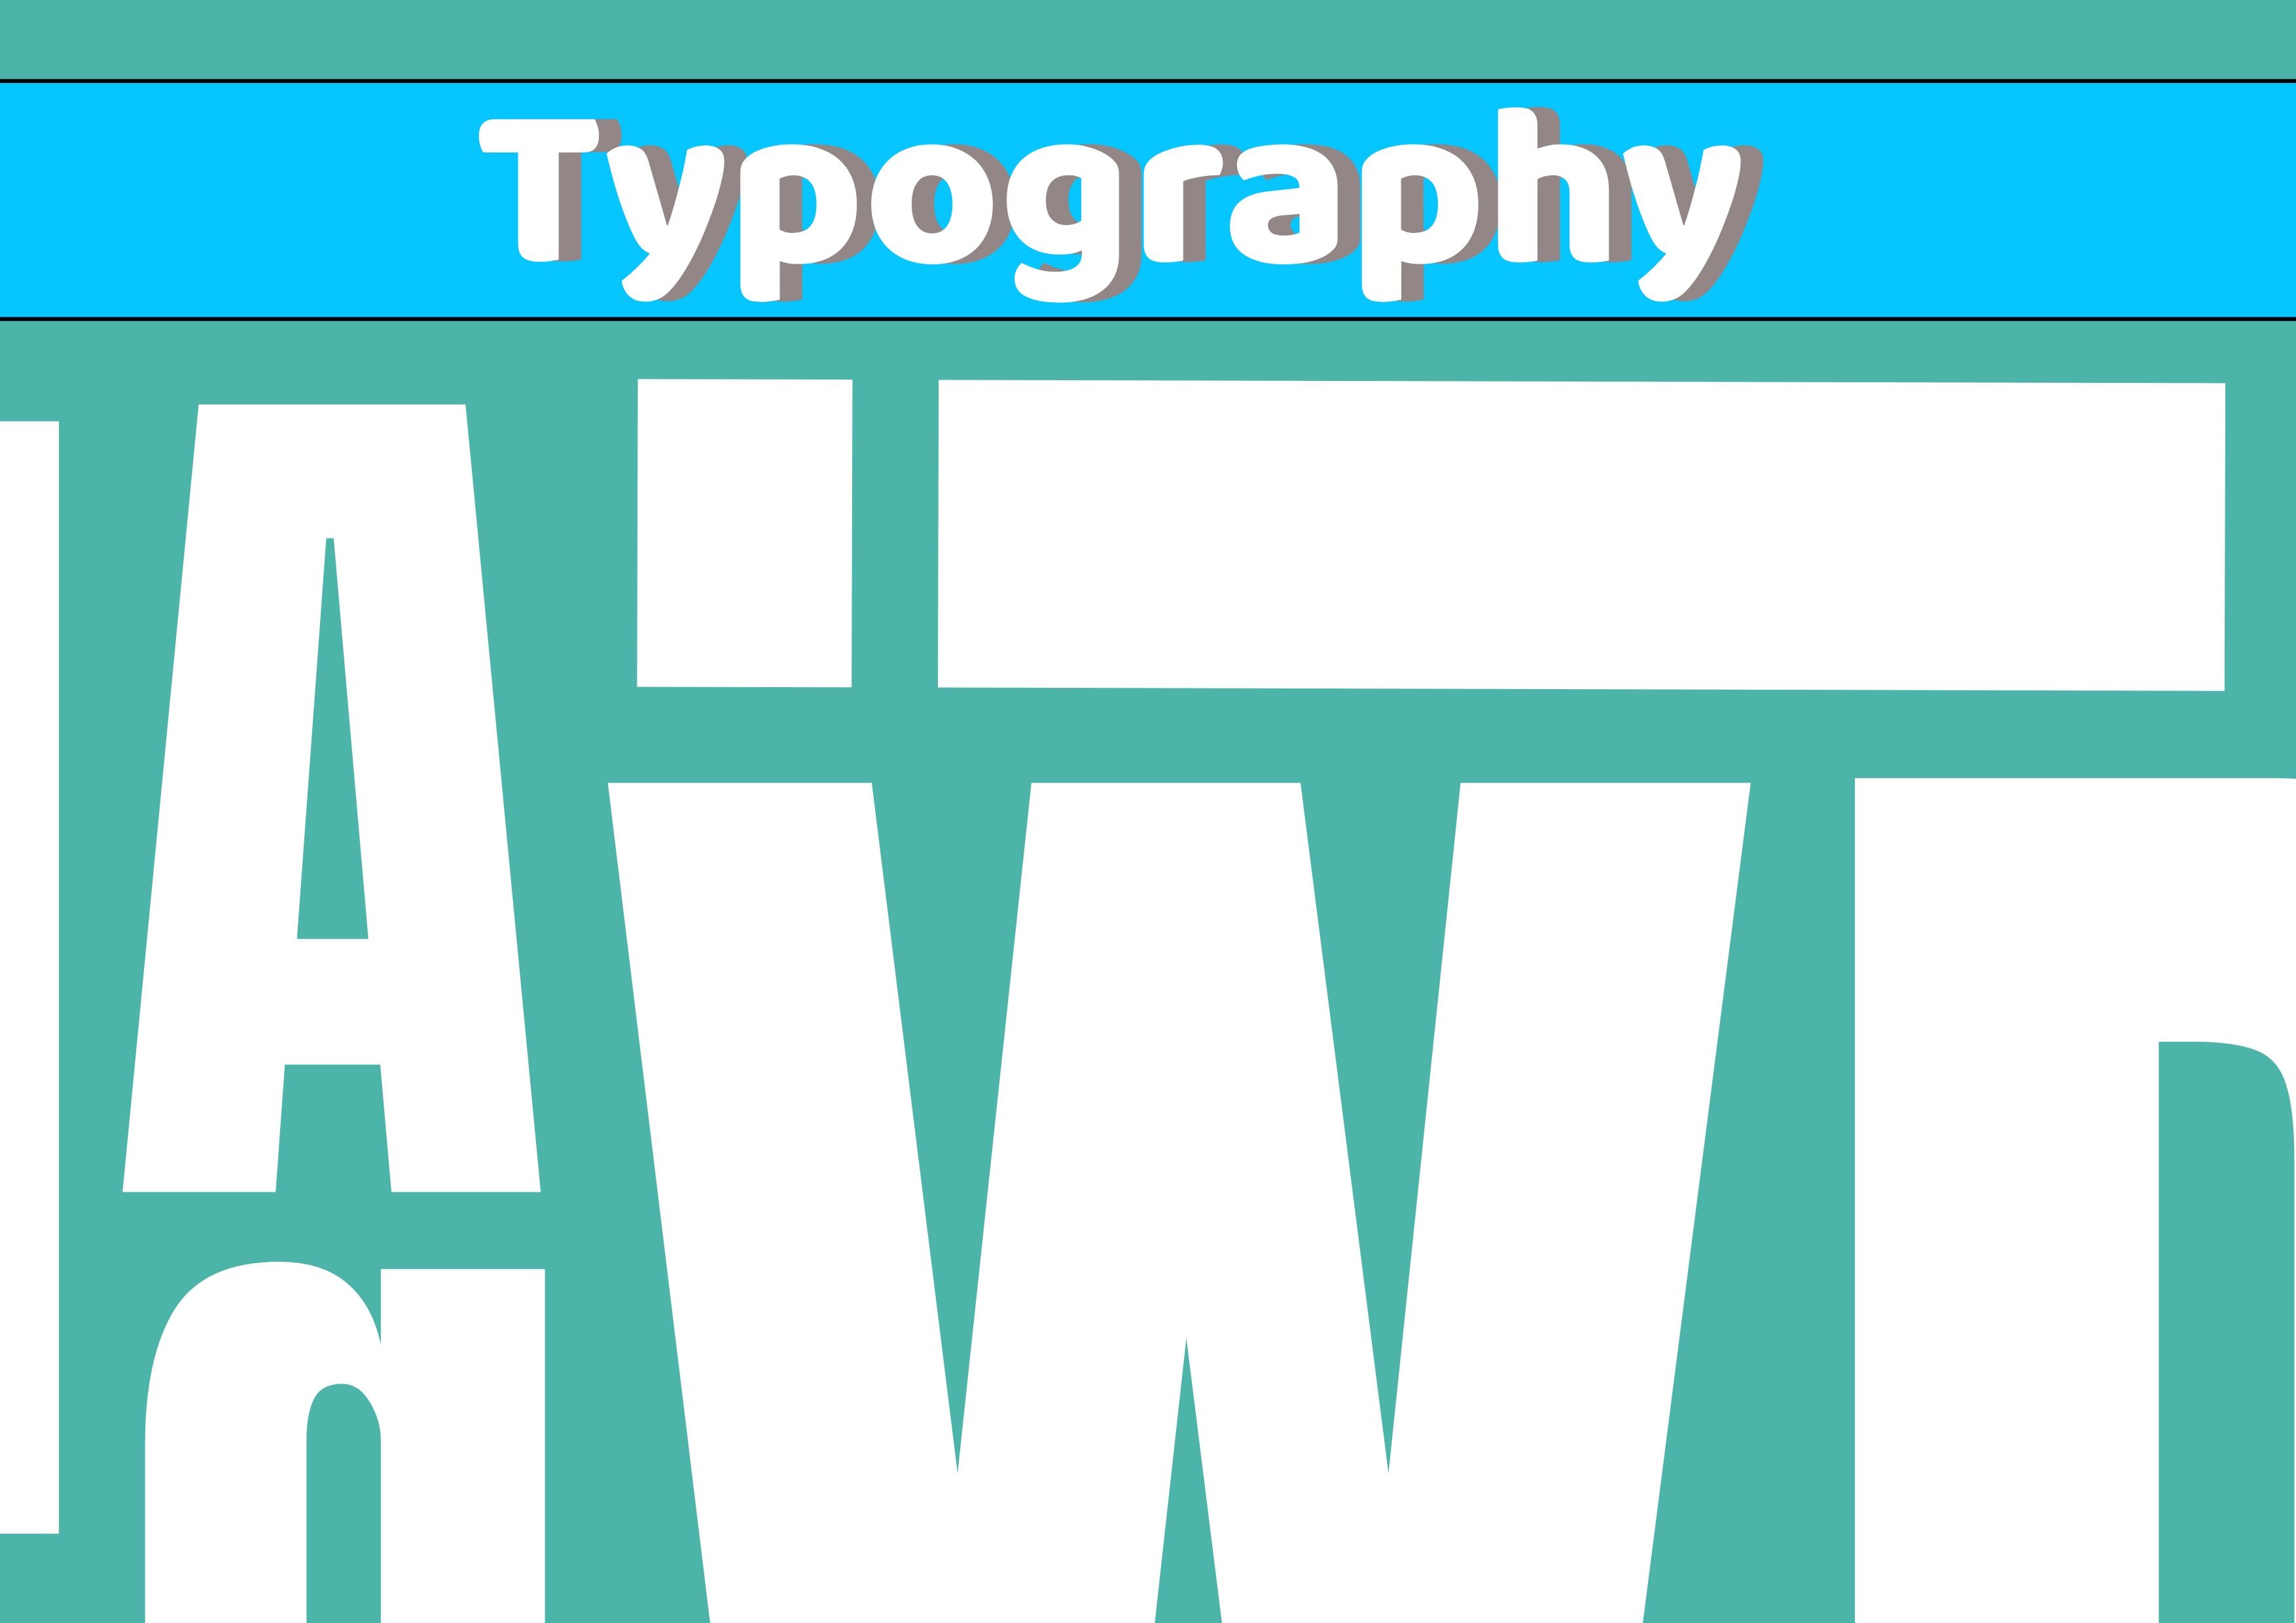 Typografiebild mit verschiedenen Buchstaben des Alphabets in Weiß und verschiedenen Größen